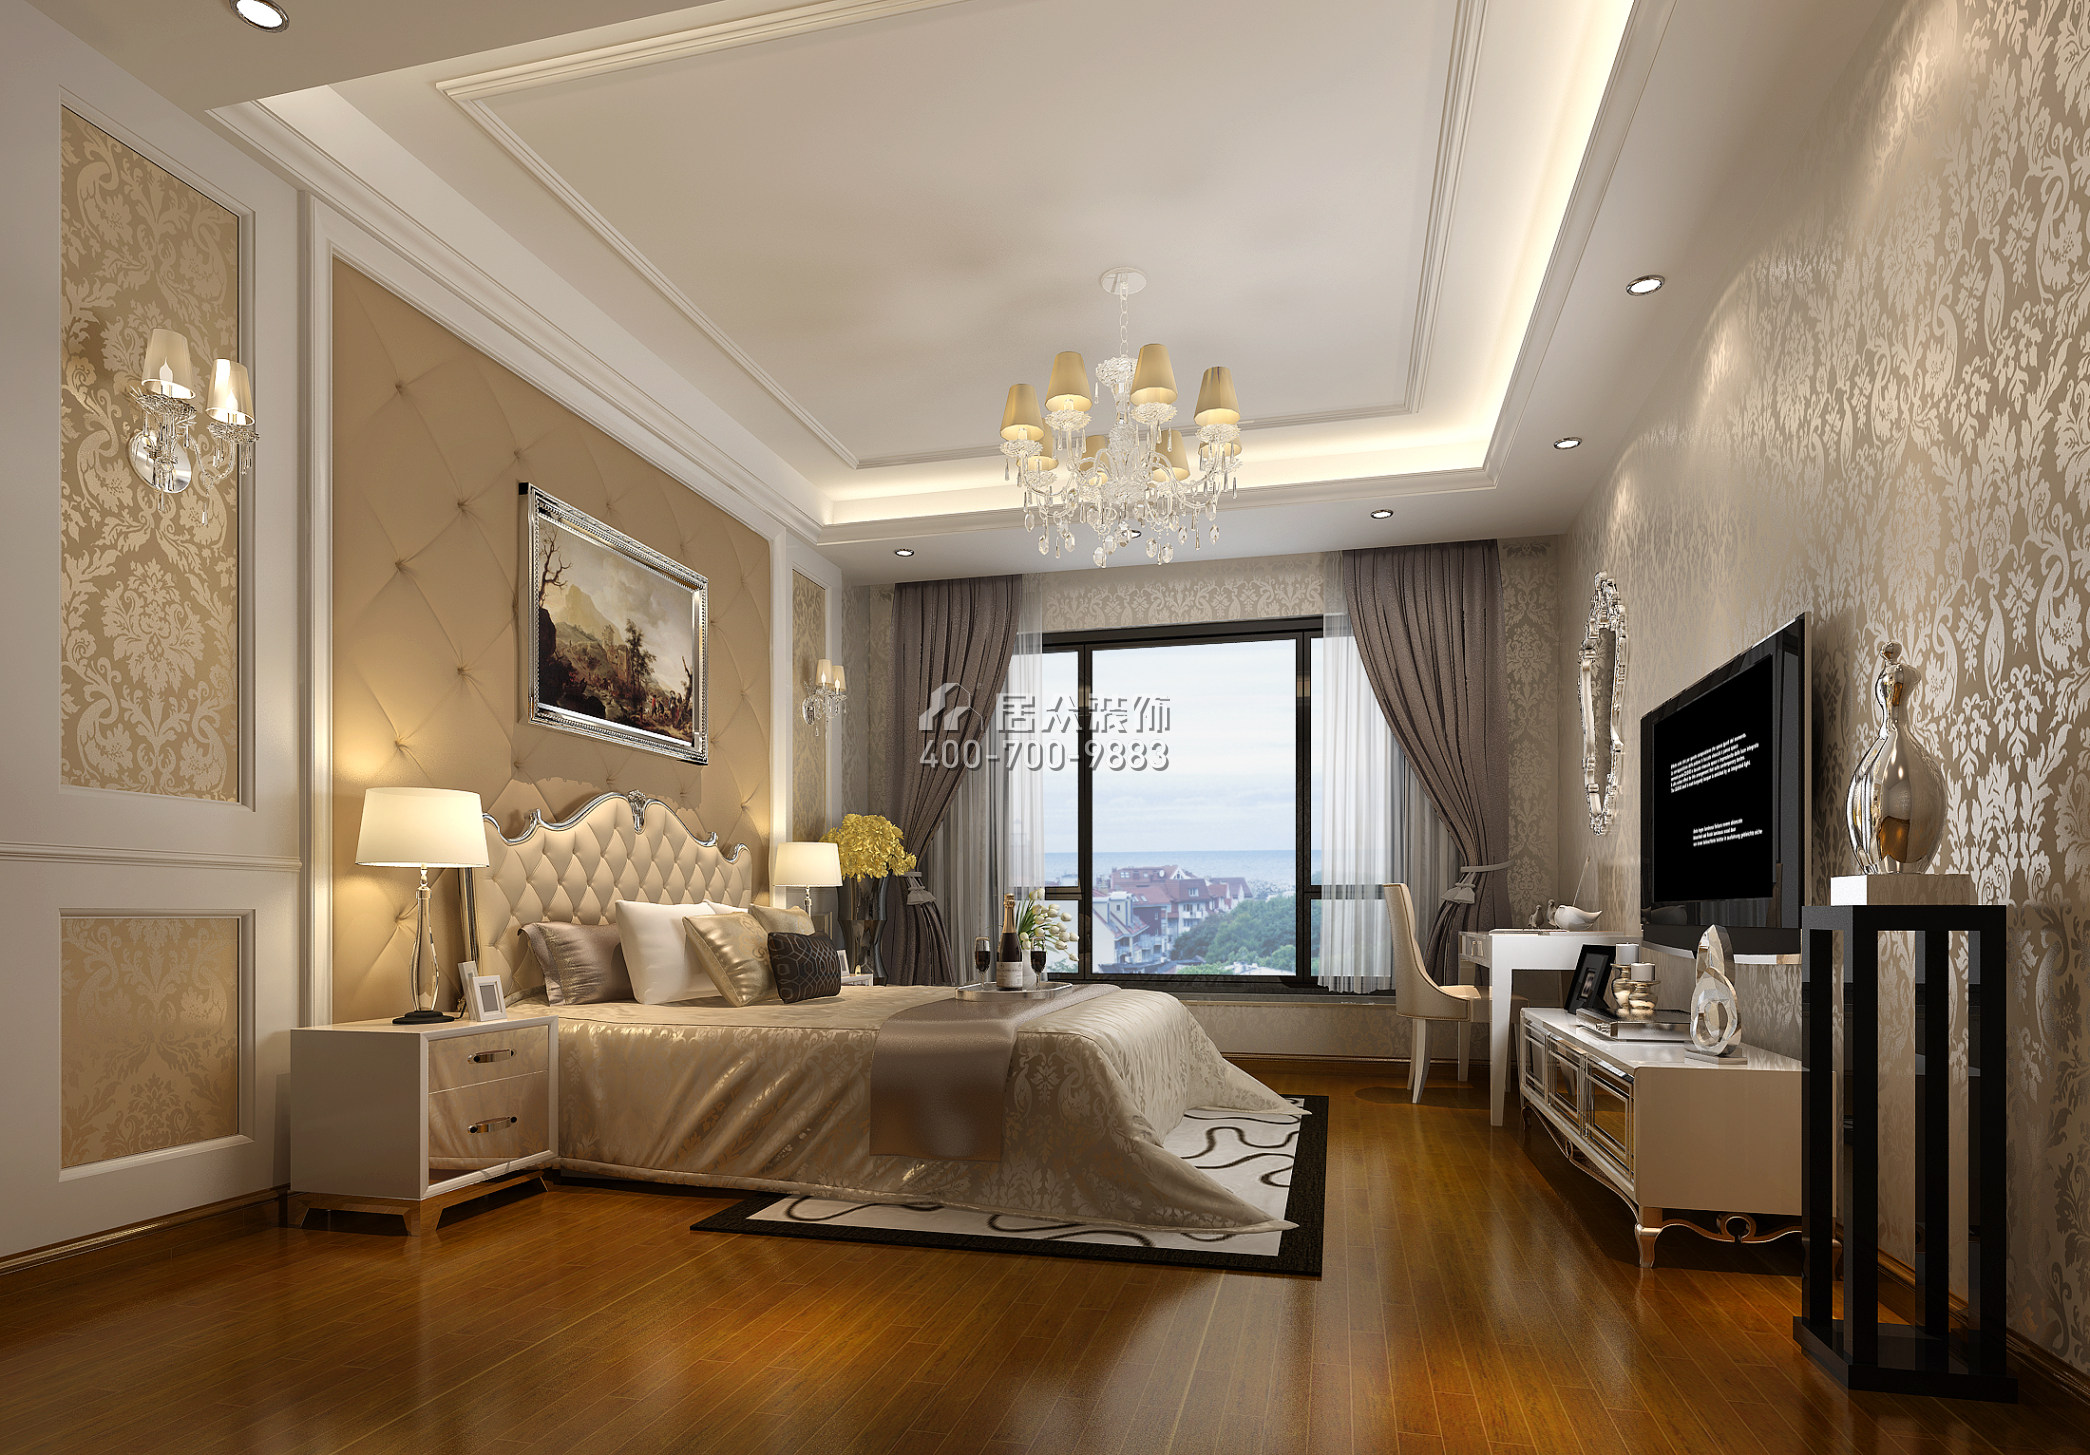 流金岁月190平方米欧式风格平层户型卧室装修效果图